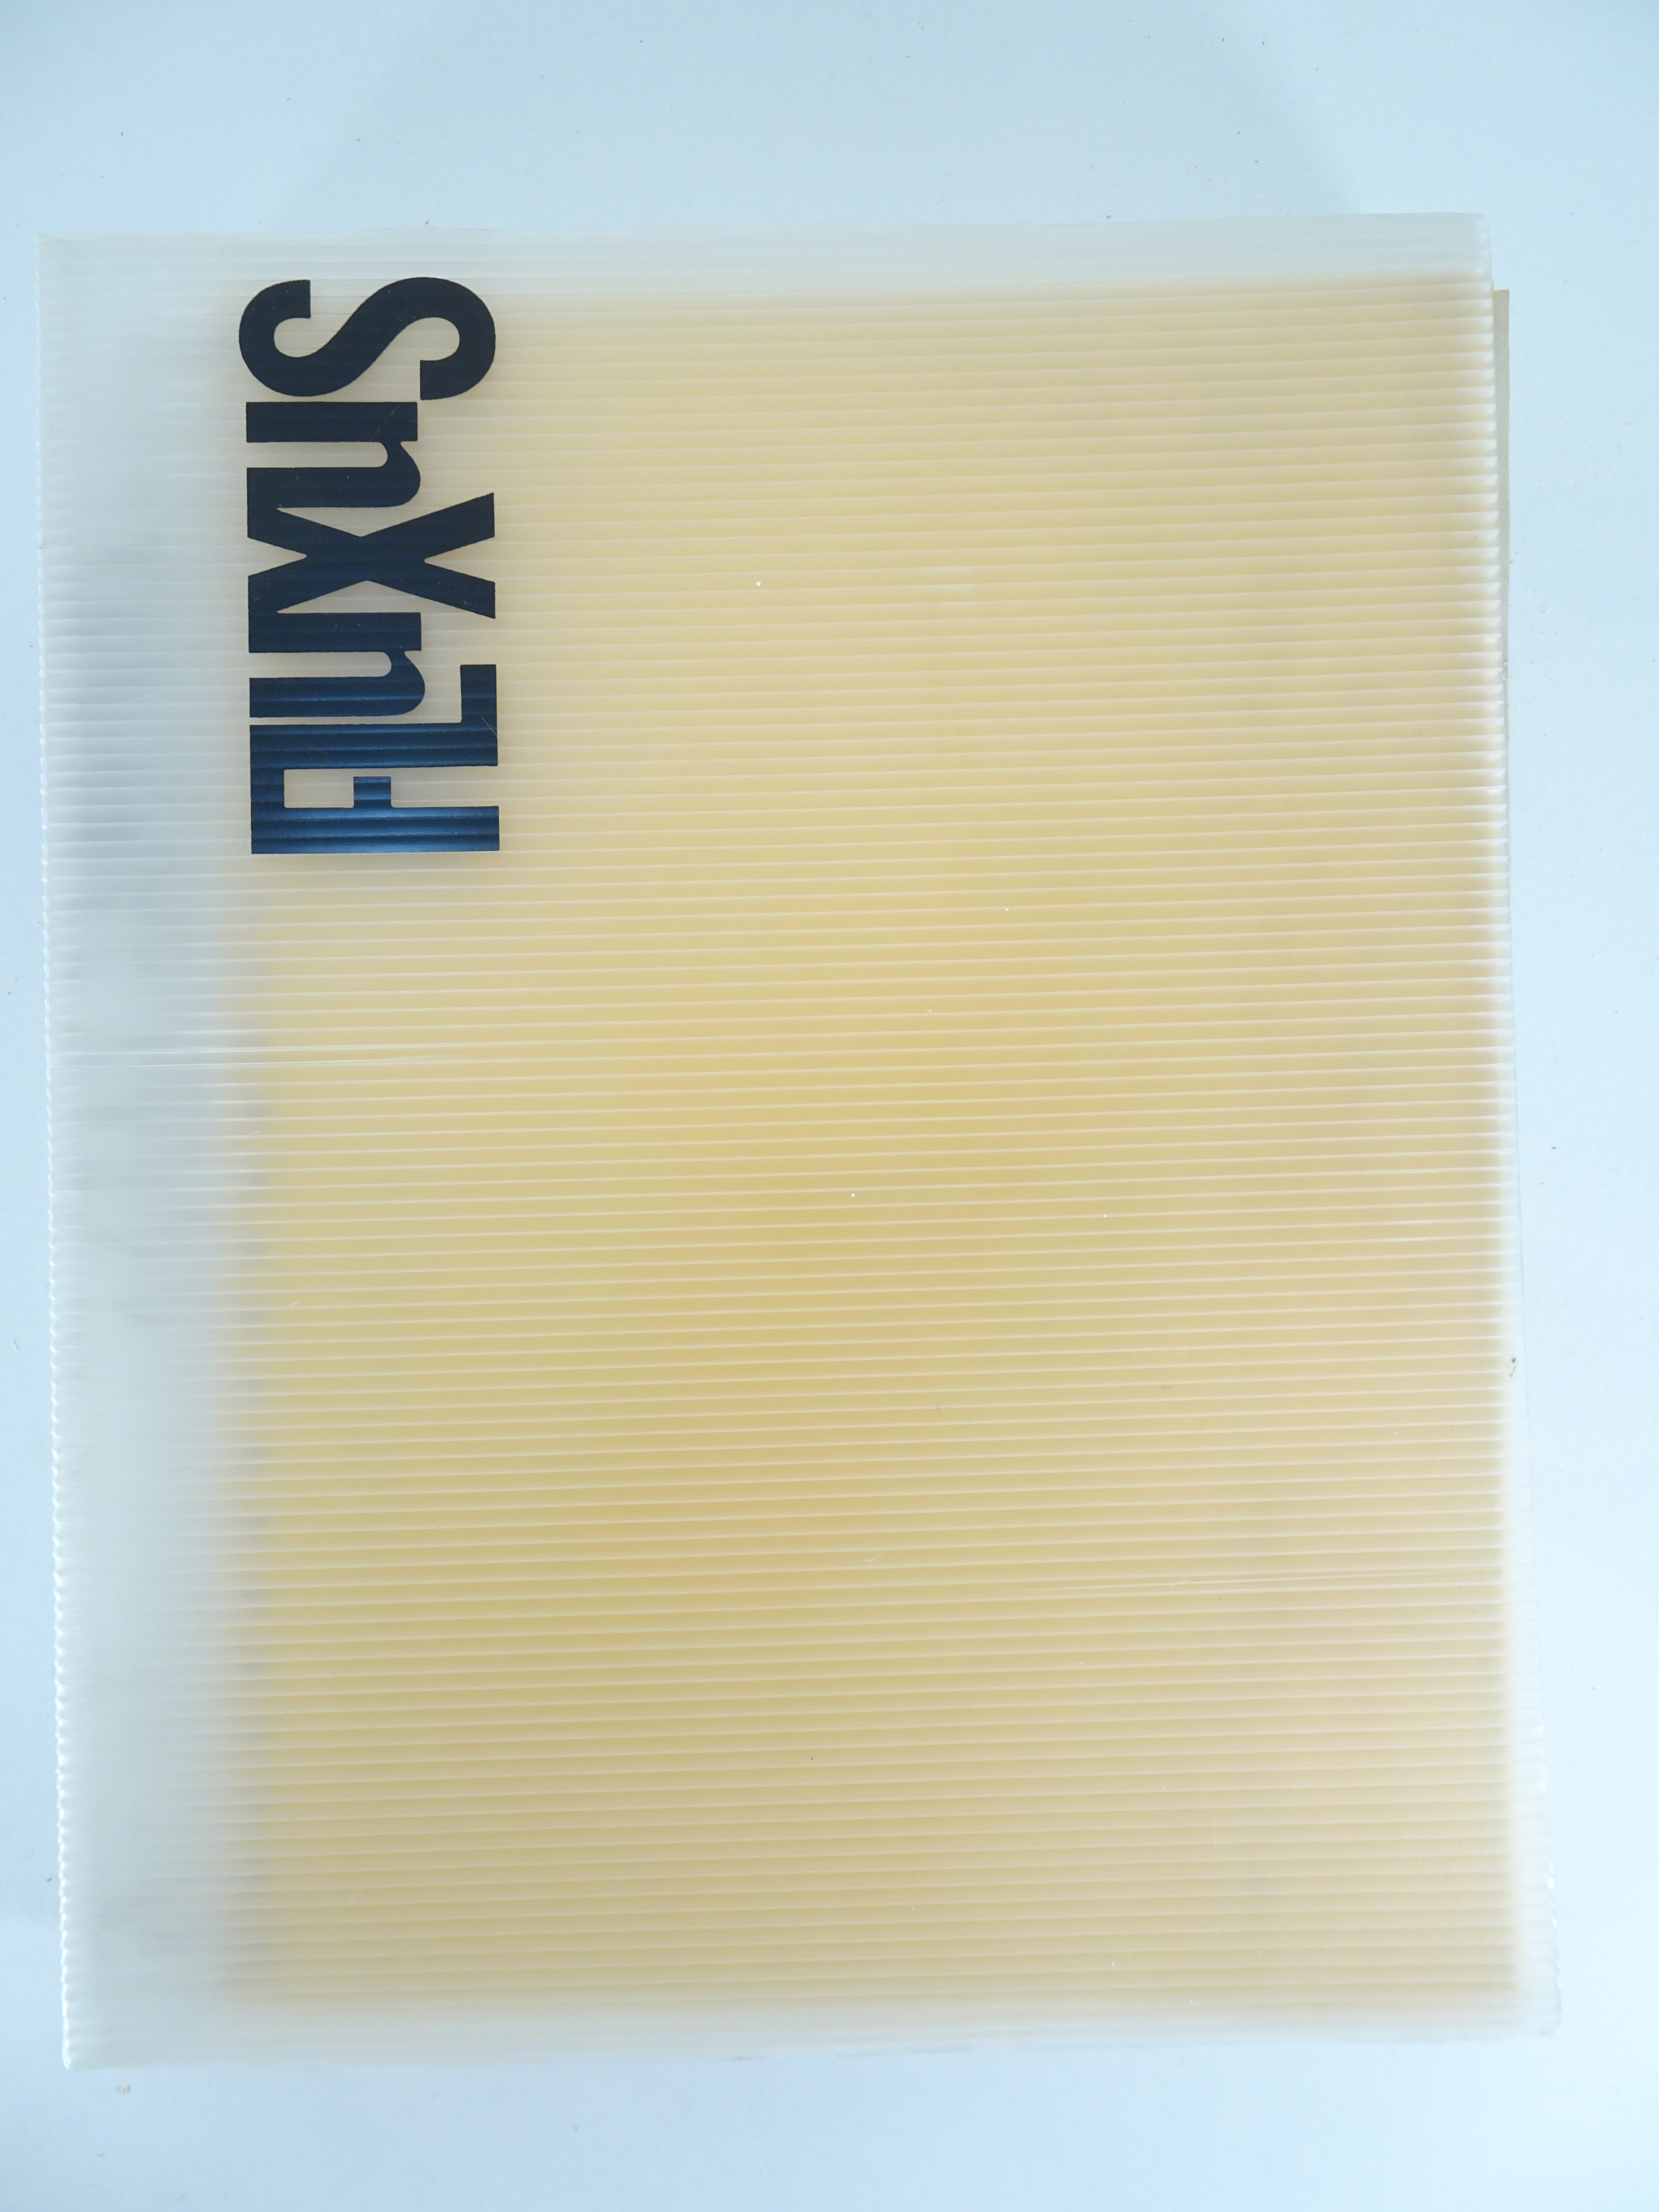 |Art| FLUXUS, "Fluxus. Eine lange Geschichte mit vielen Knoten. Fluxus in Deutschland 1962 - 1994"